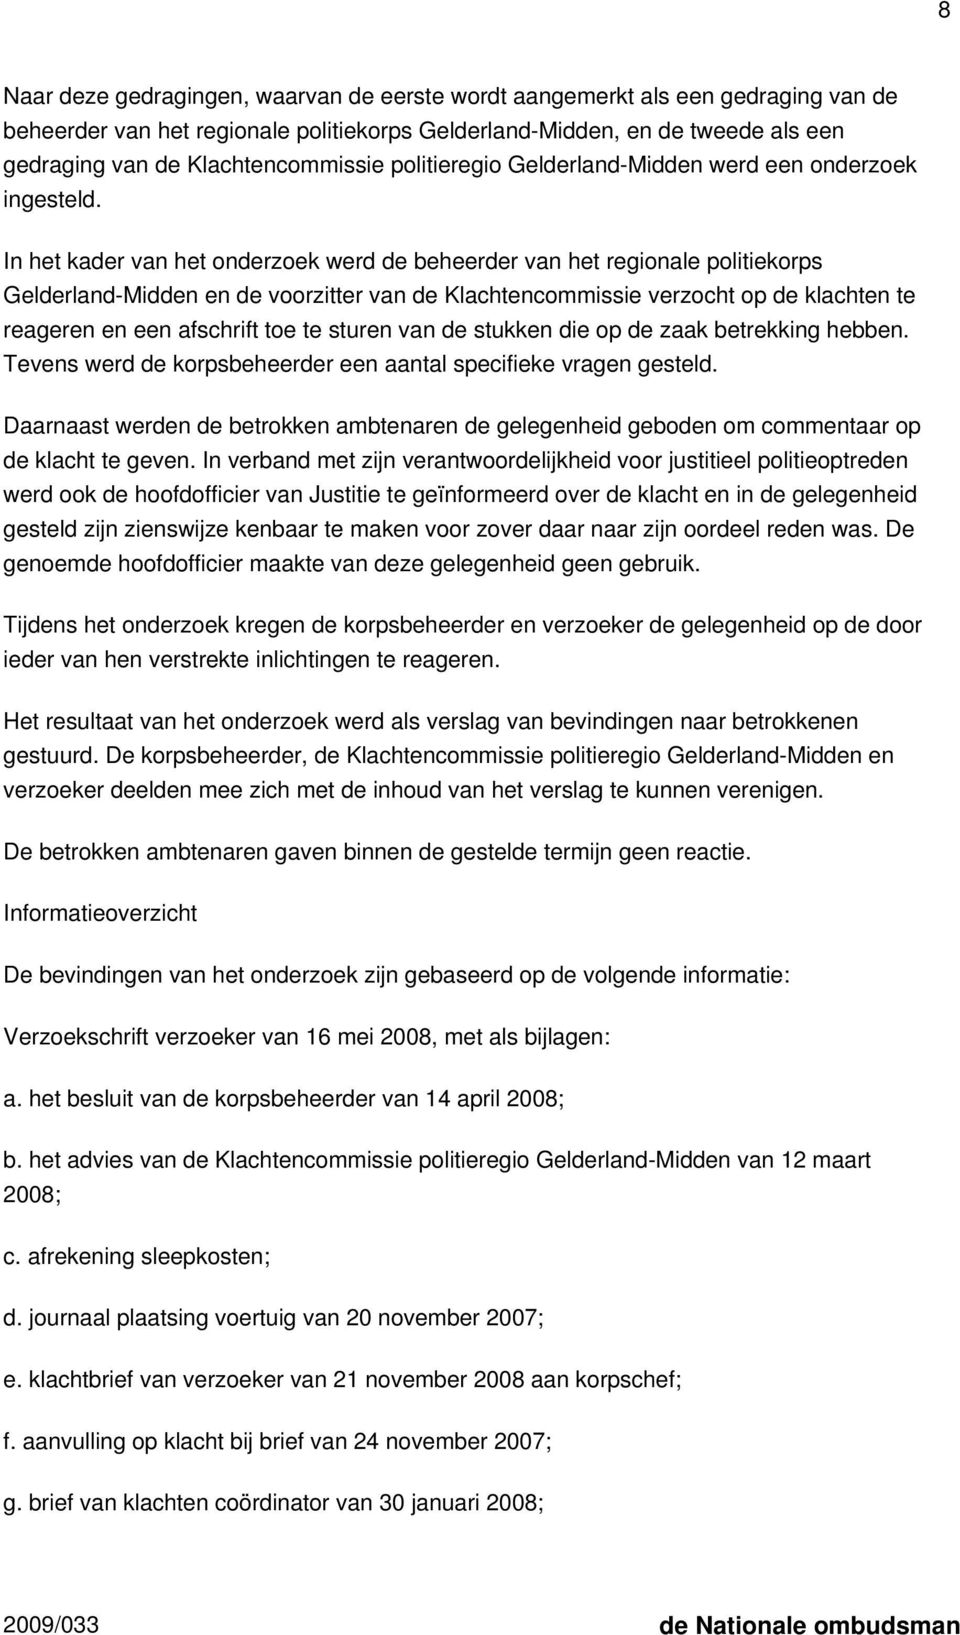 In het kader van het onderzoek werd de beheerder van het regionale politiekorps Gelderland-Midden en de voorzitter van de Klachtencommissie verzocht op de klachten te reageren en een afschrift toe te